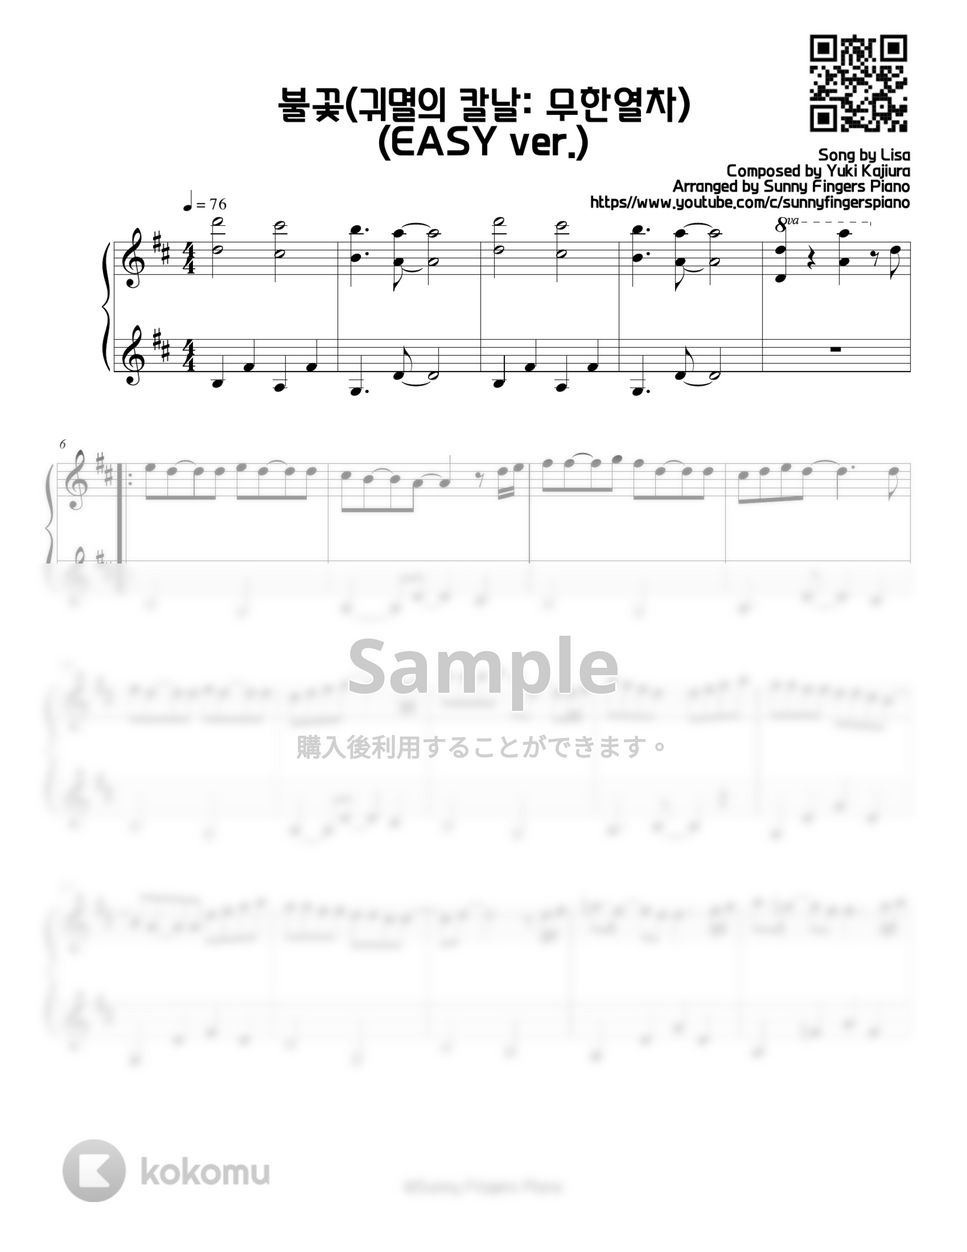 劇場版『鬼滅の刃無限列車編』 - 炎 (EASY ver.) by Sunny Fingers Piano